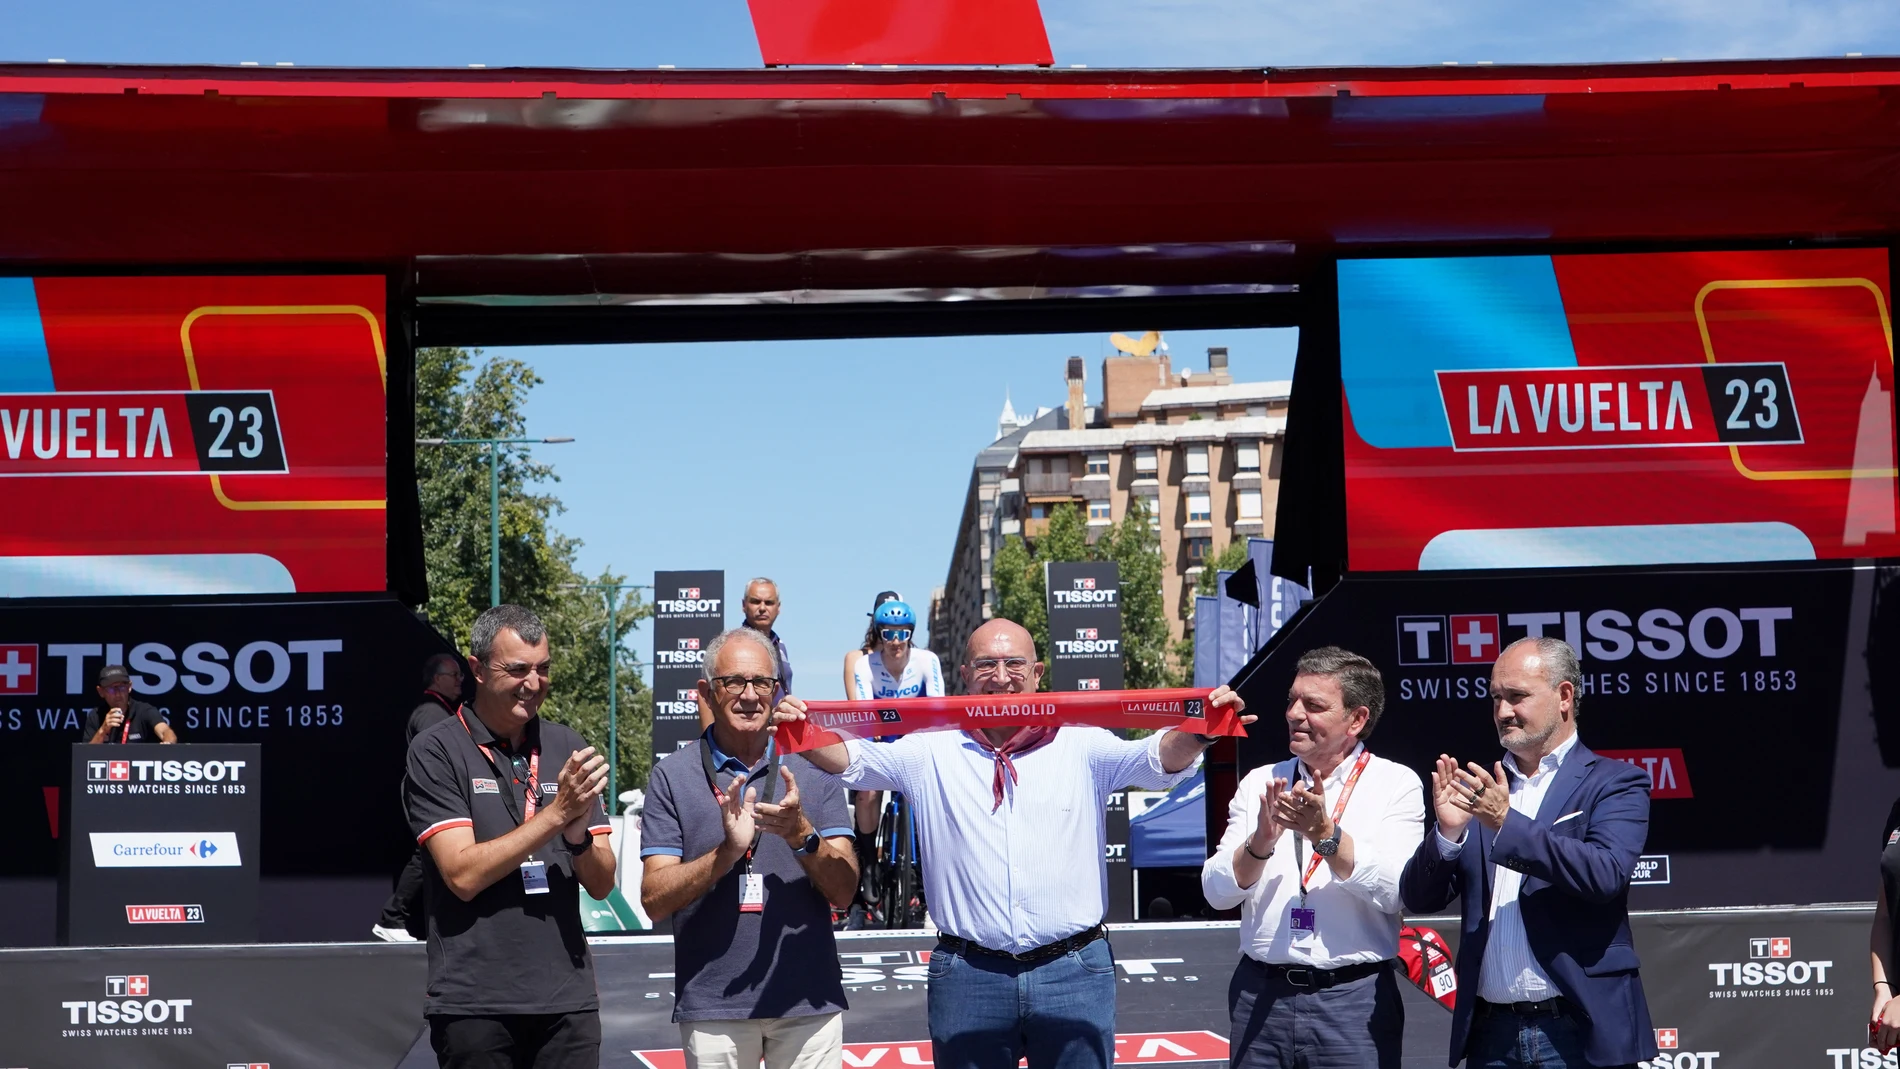 El alcalde Jesús Julio Carnero, junto al consejero González Gago, López Cerrón y Jorge Guillén, corta la cinta del inicio de la etapa de Valladolid